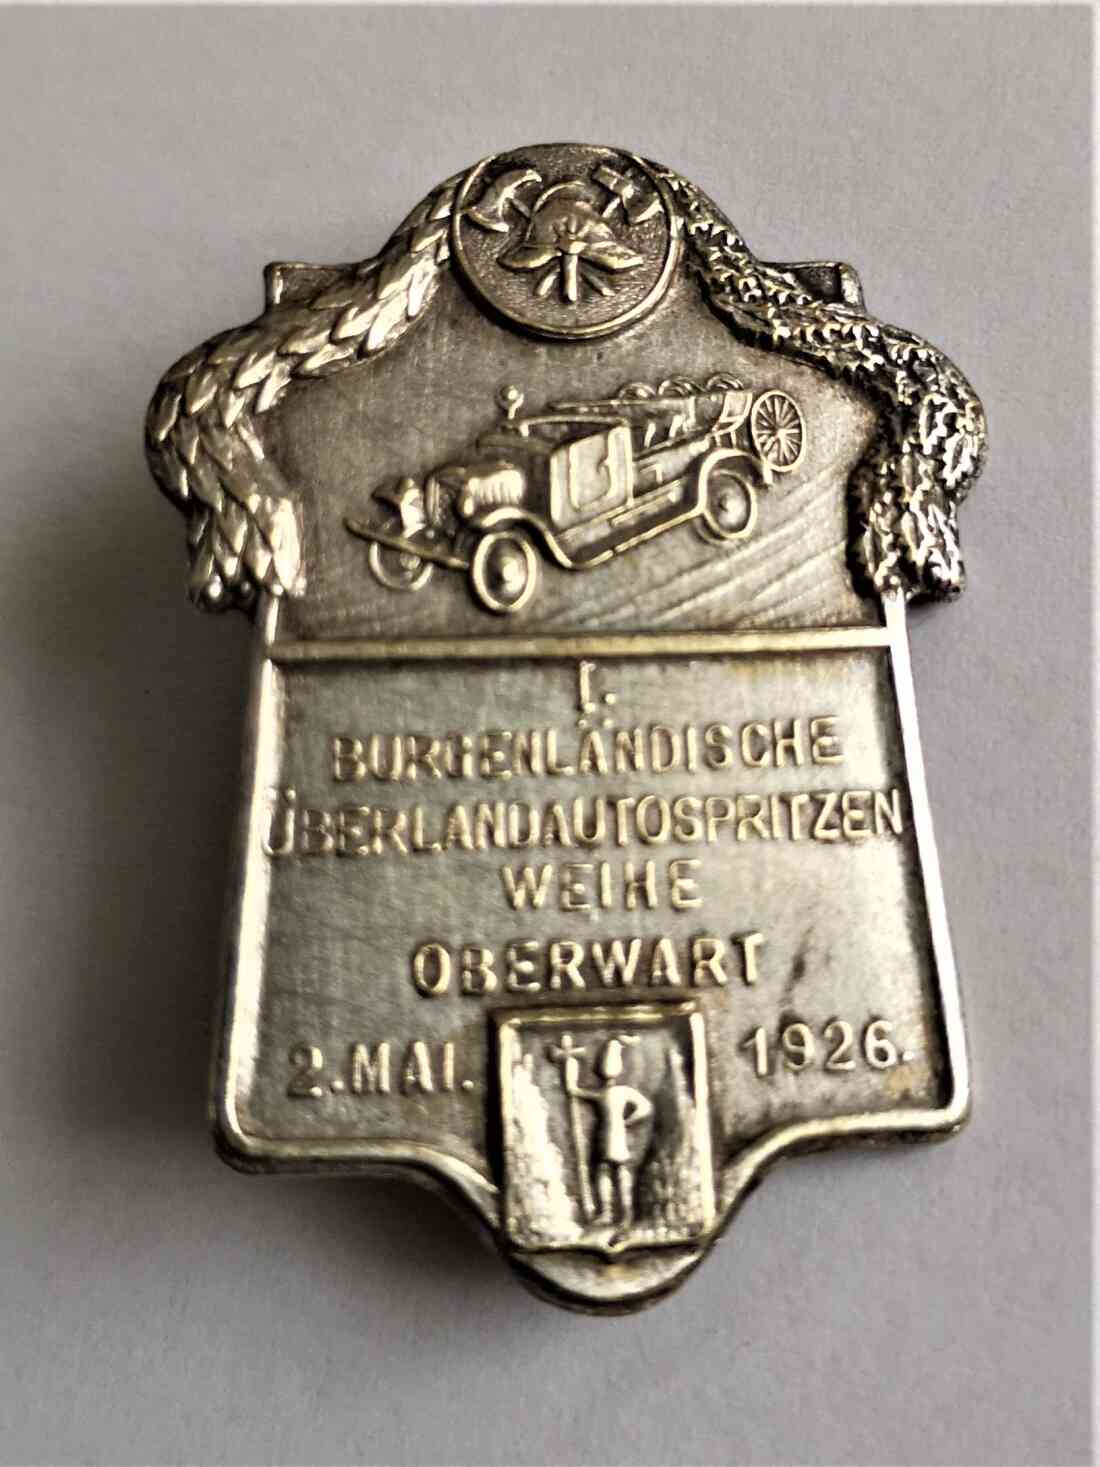 Freiwillige Feuerwehr: Anstecker anlässlich der Ankunftsfeier des ersten Feuerwehrautos "Überland Automotorspritze" Mai 1926